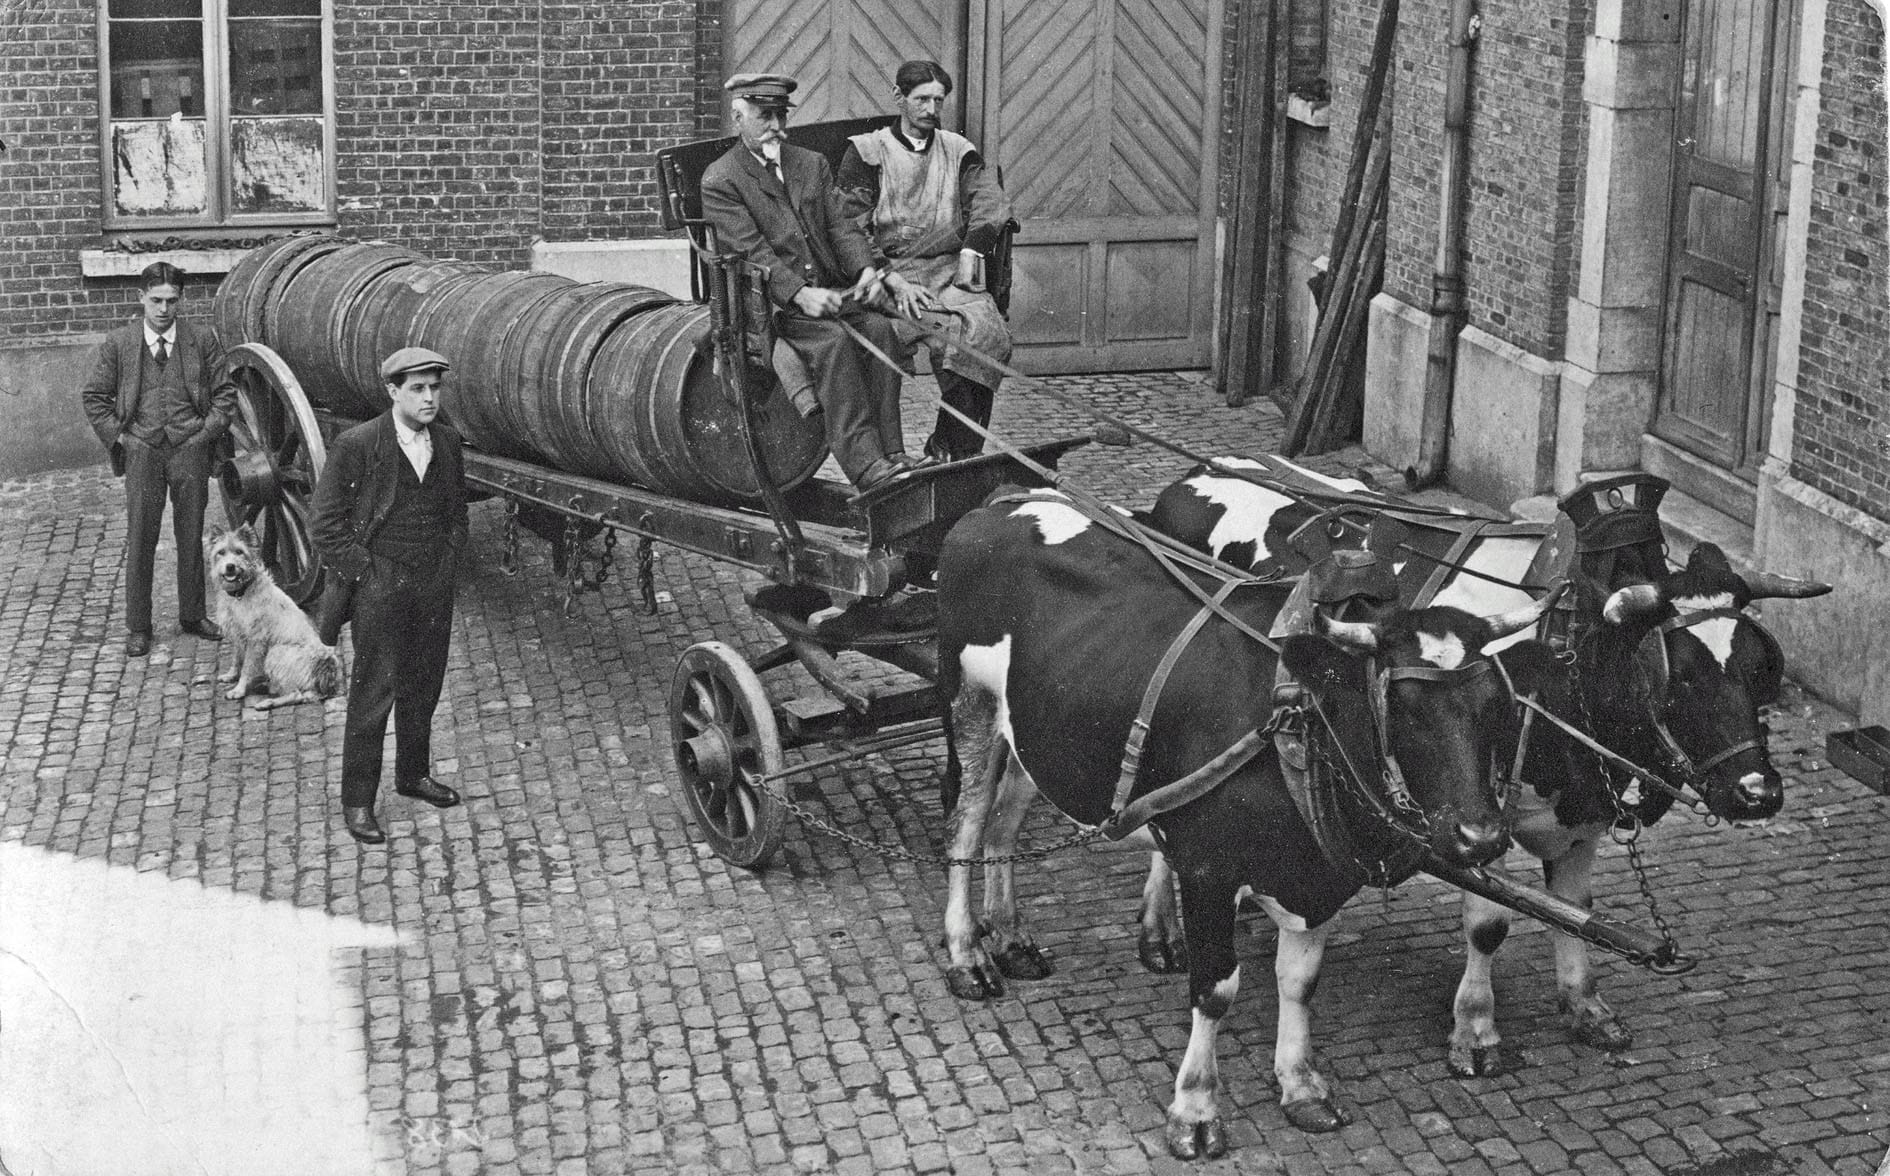 Transport de bières à la brasserie Dewolfs pendant la première guerre mondiale. Les chevaux réquisitionnés ont été remplacés par des vaches - Photo coll. Dewolfs.